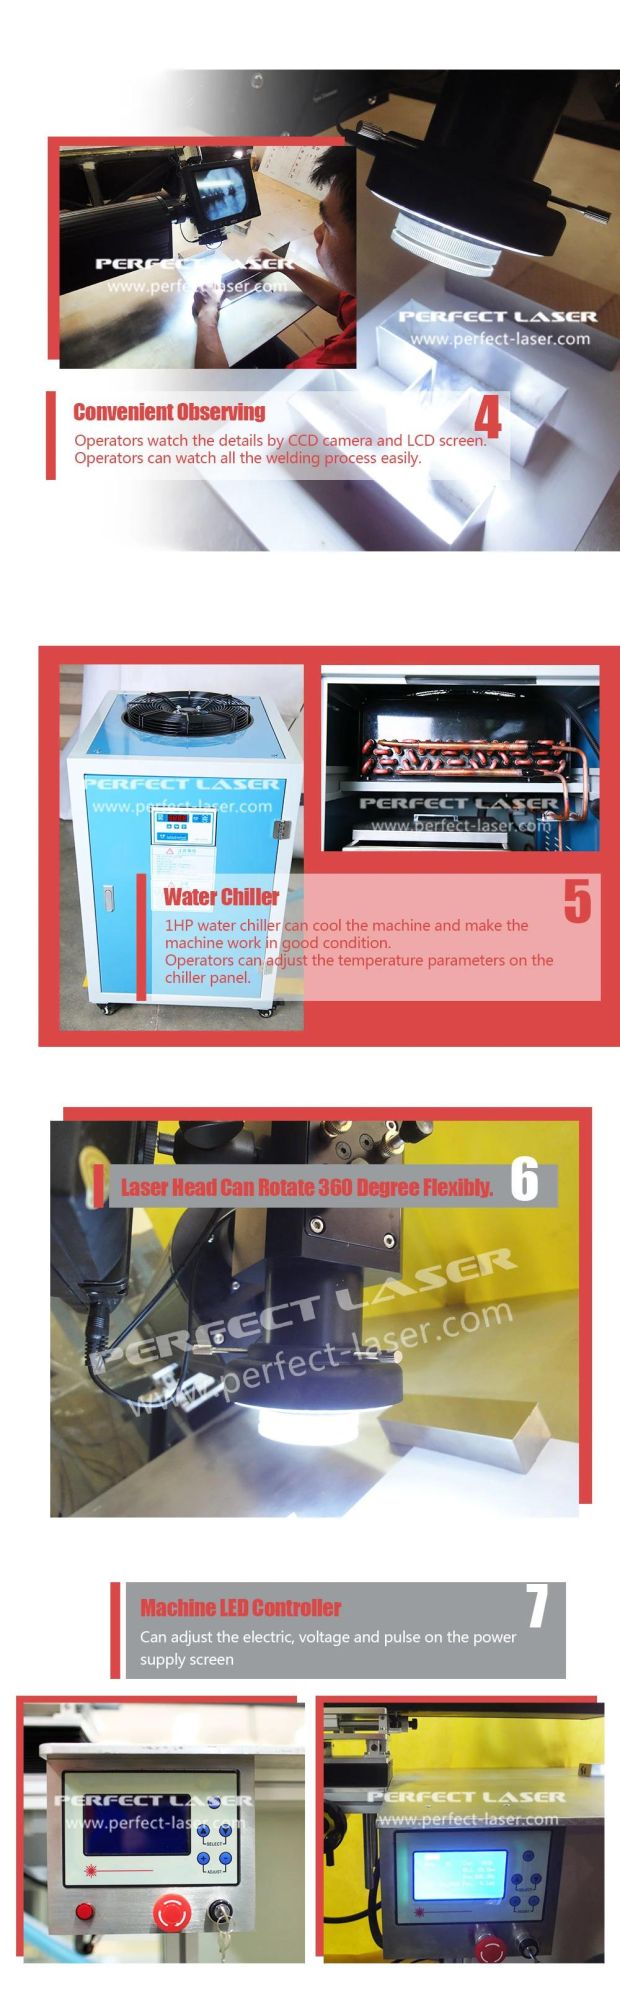 Channel Letter Laser Welding Machine 300W Stainless Steel Laser Soldering Machine Price